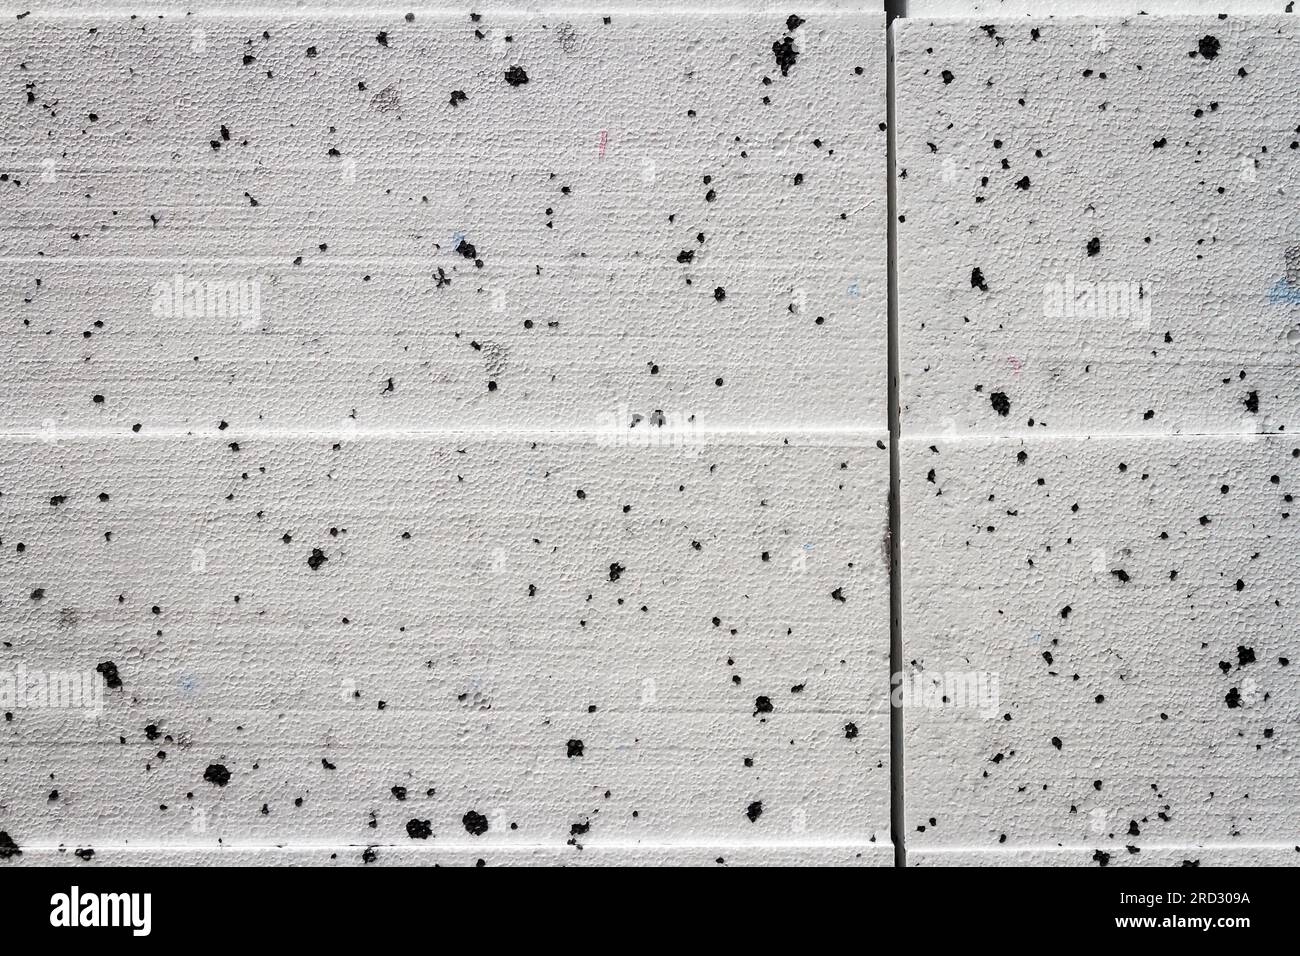 Photo de texture abstraite en gros plan de blanc compressé avec des blocs de styromousse à points noirs Banque D'Images